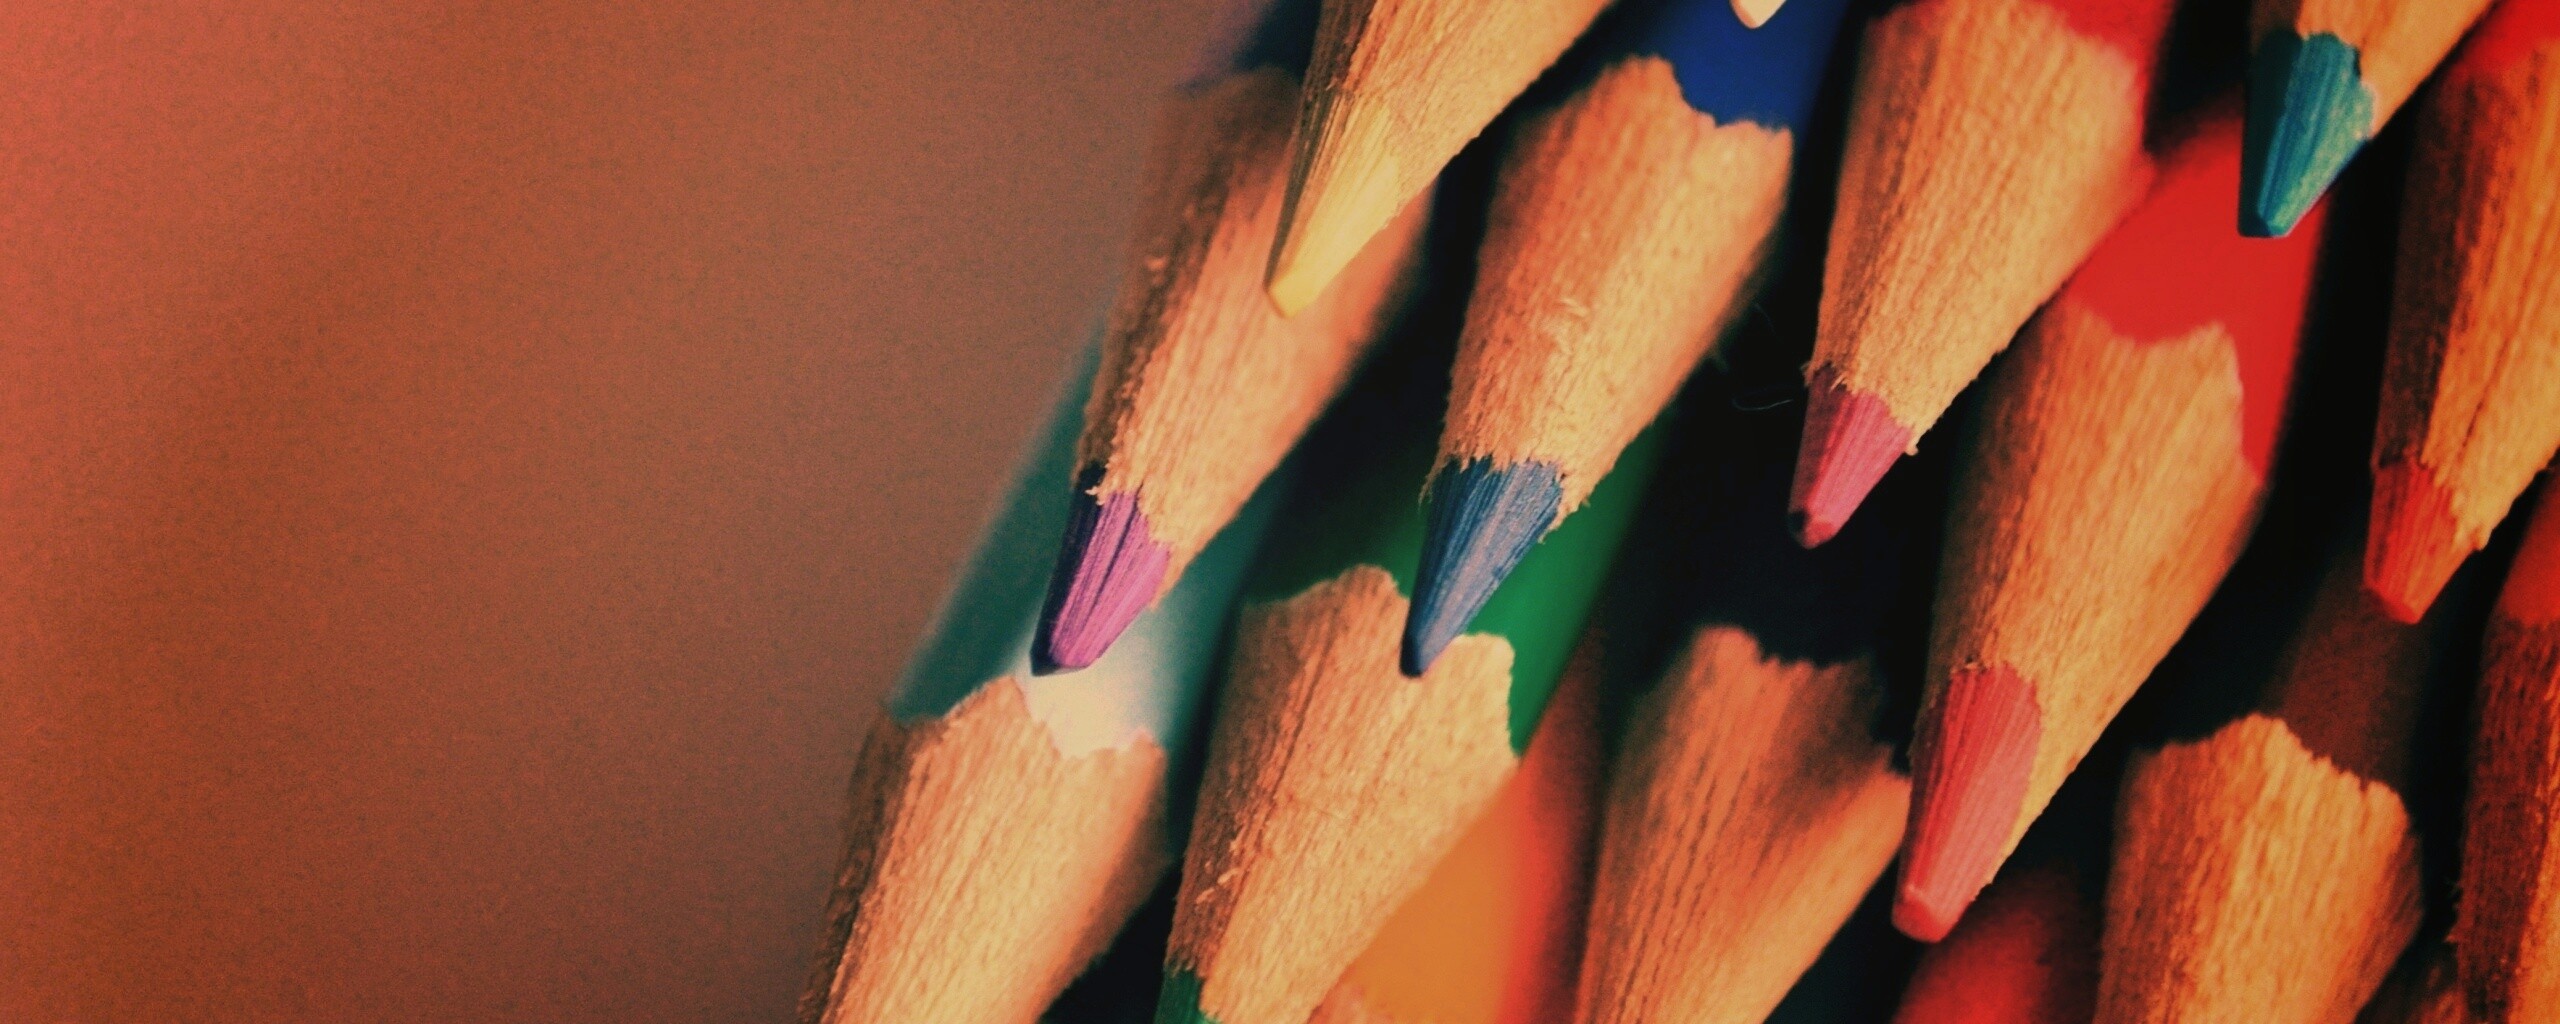 цветные карандаши без смс